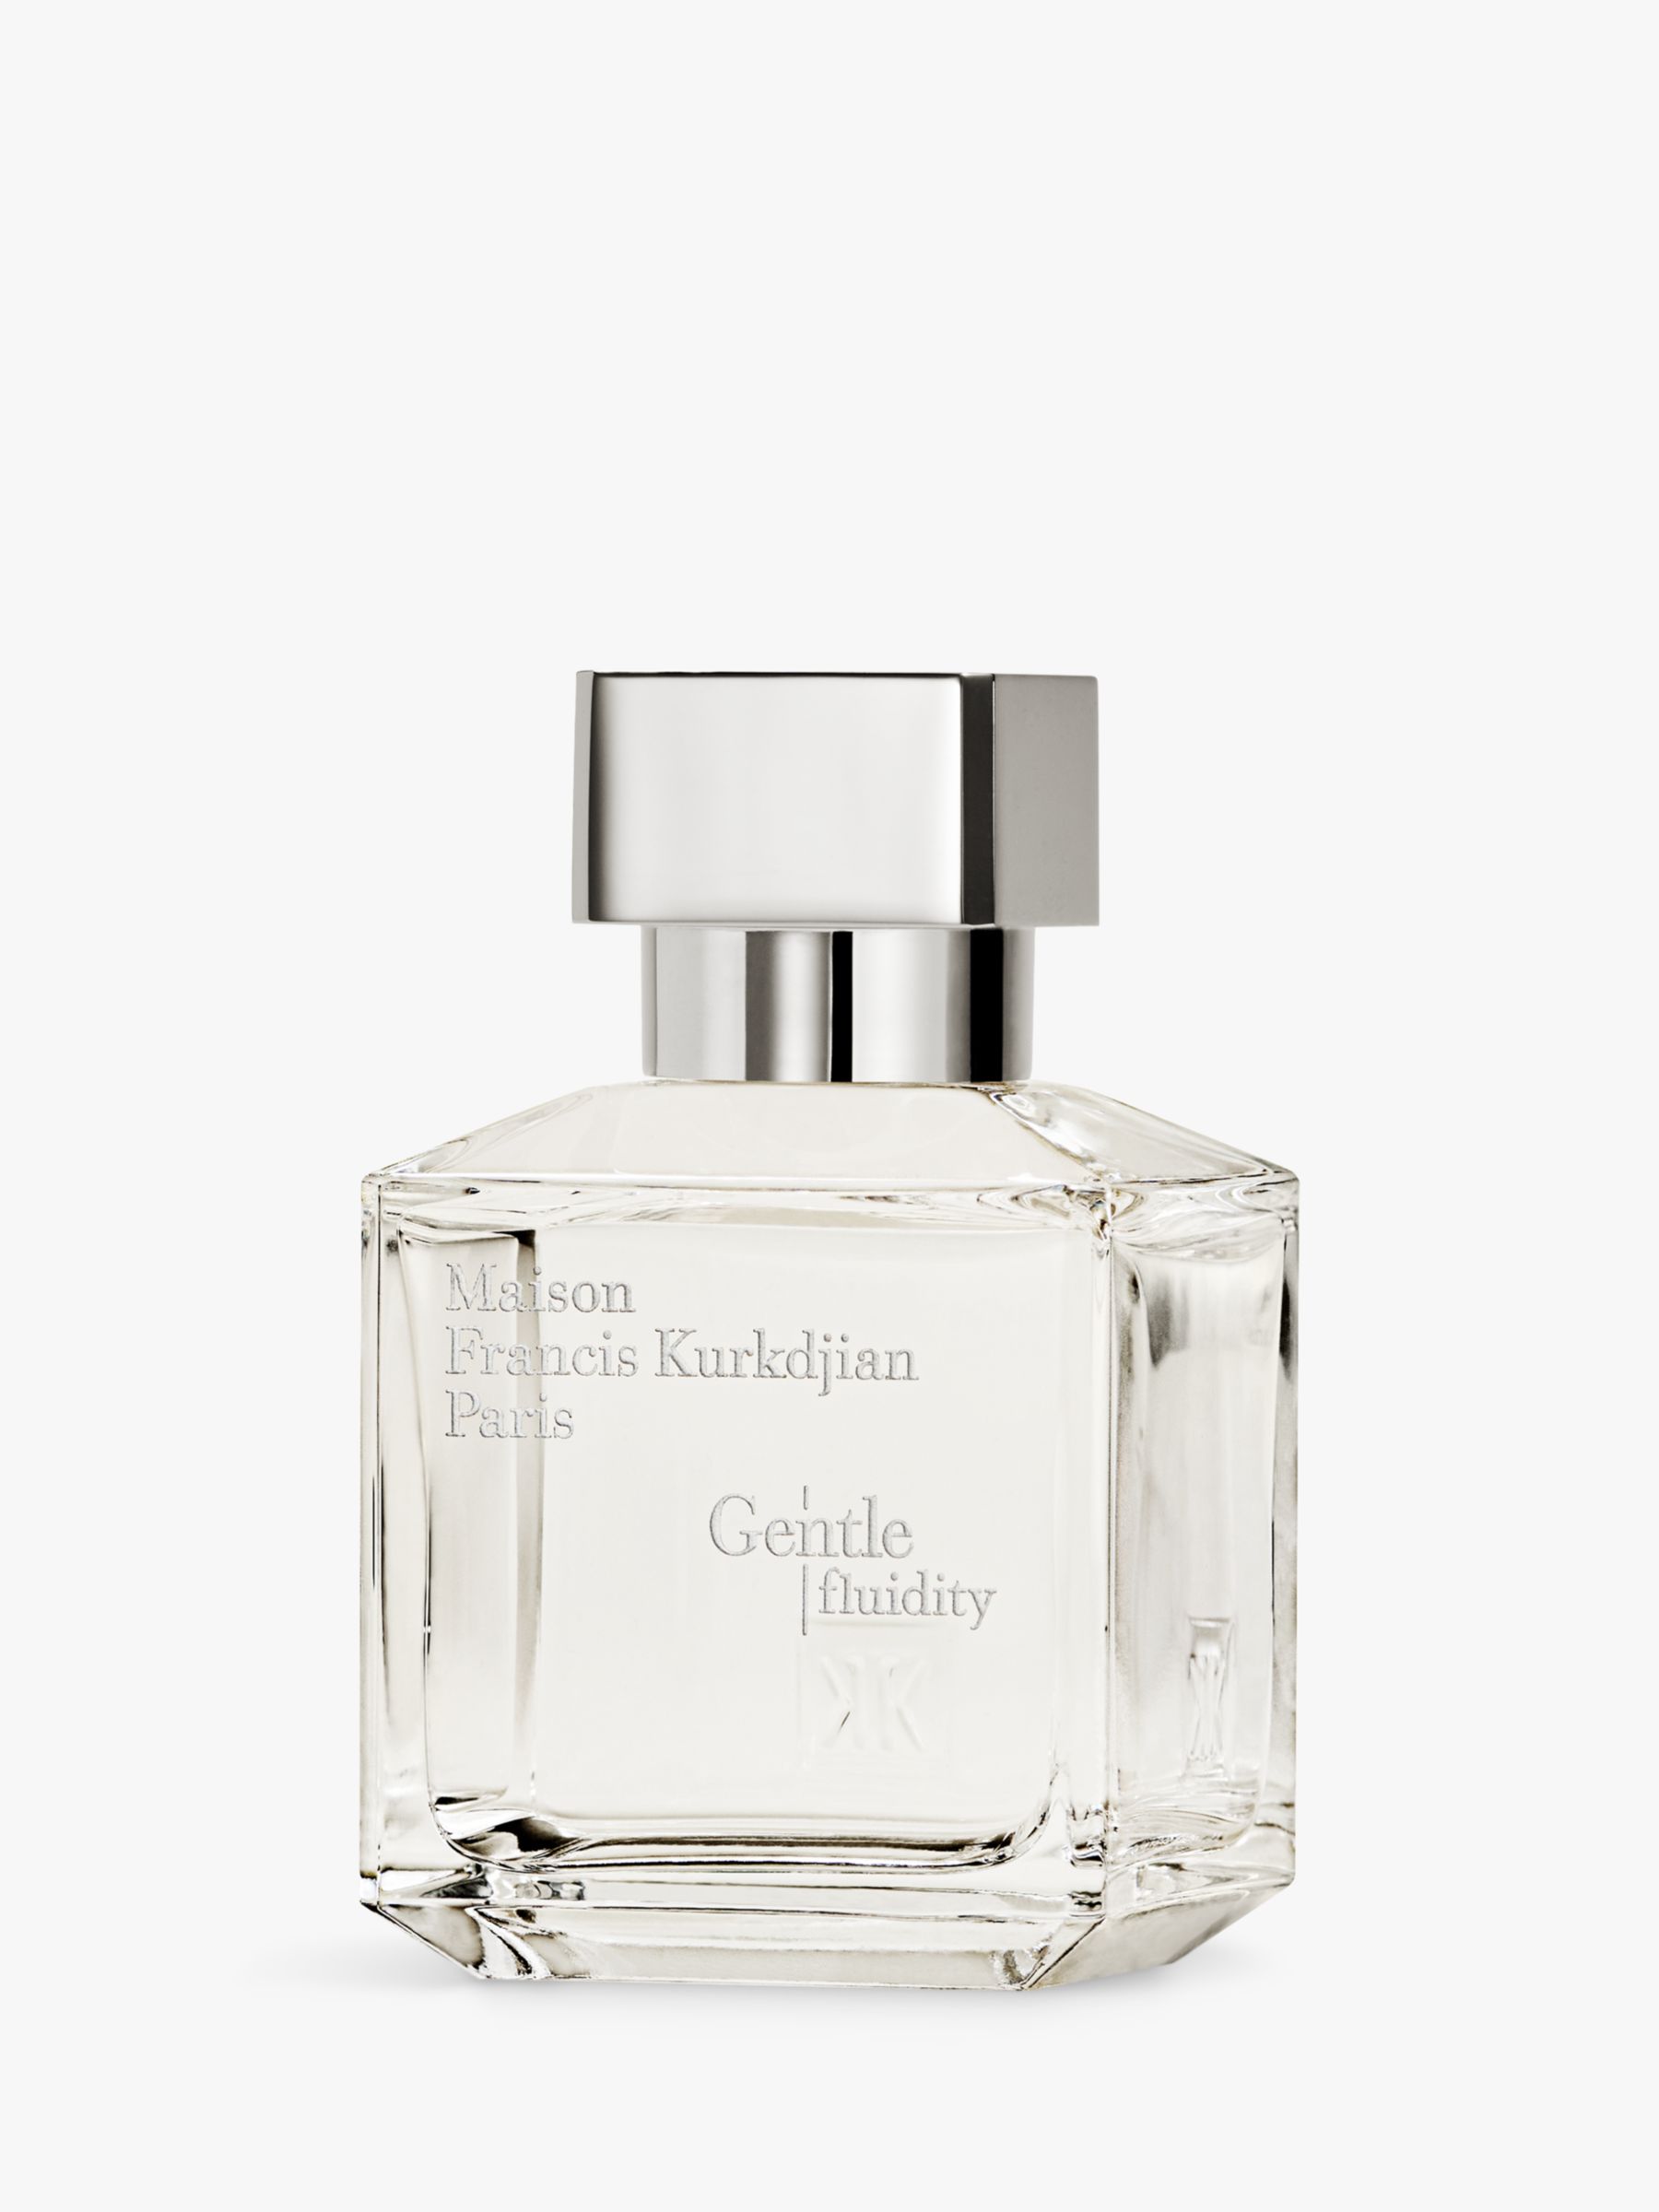 Maison Francis Kurkdjian Gentle Fluidity Silver Eau de Parfum, 70ml